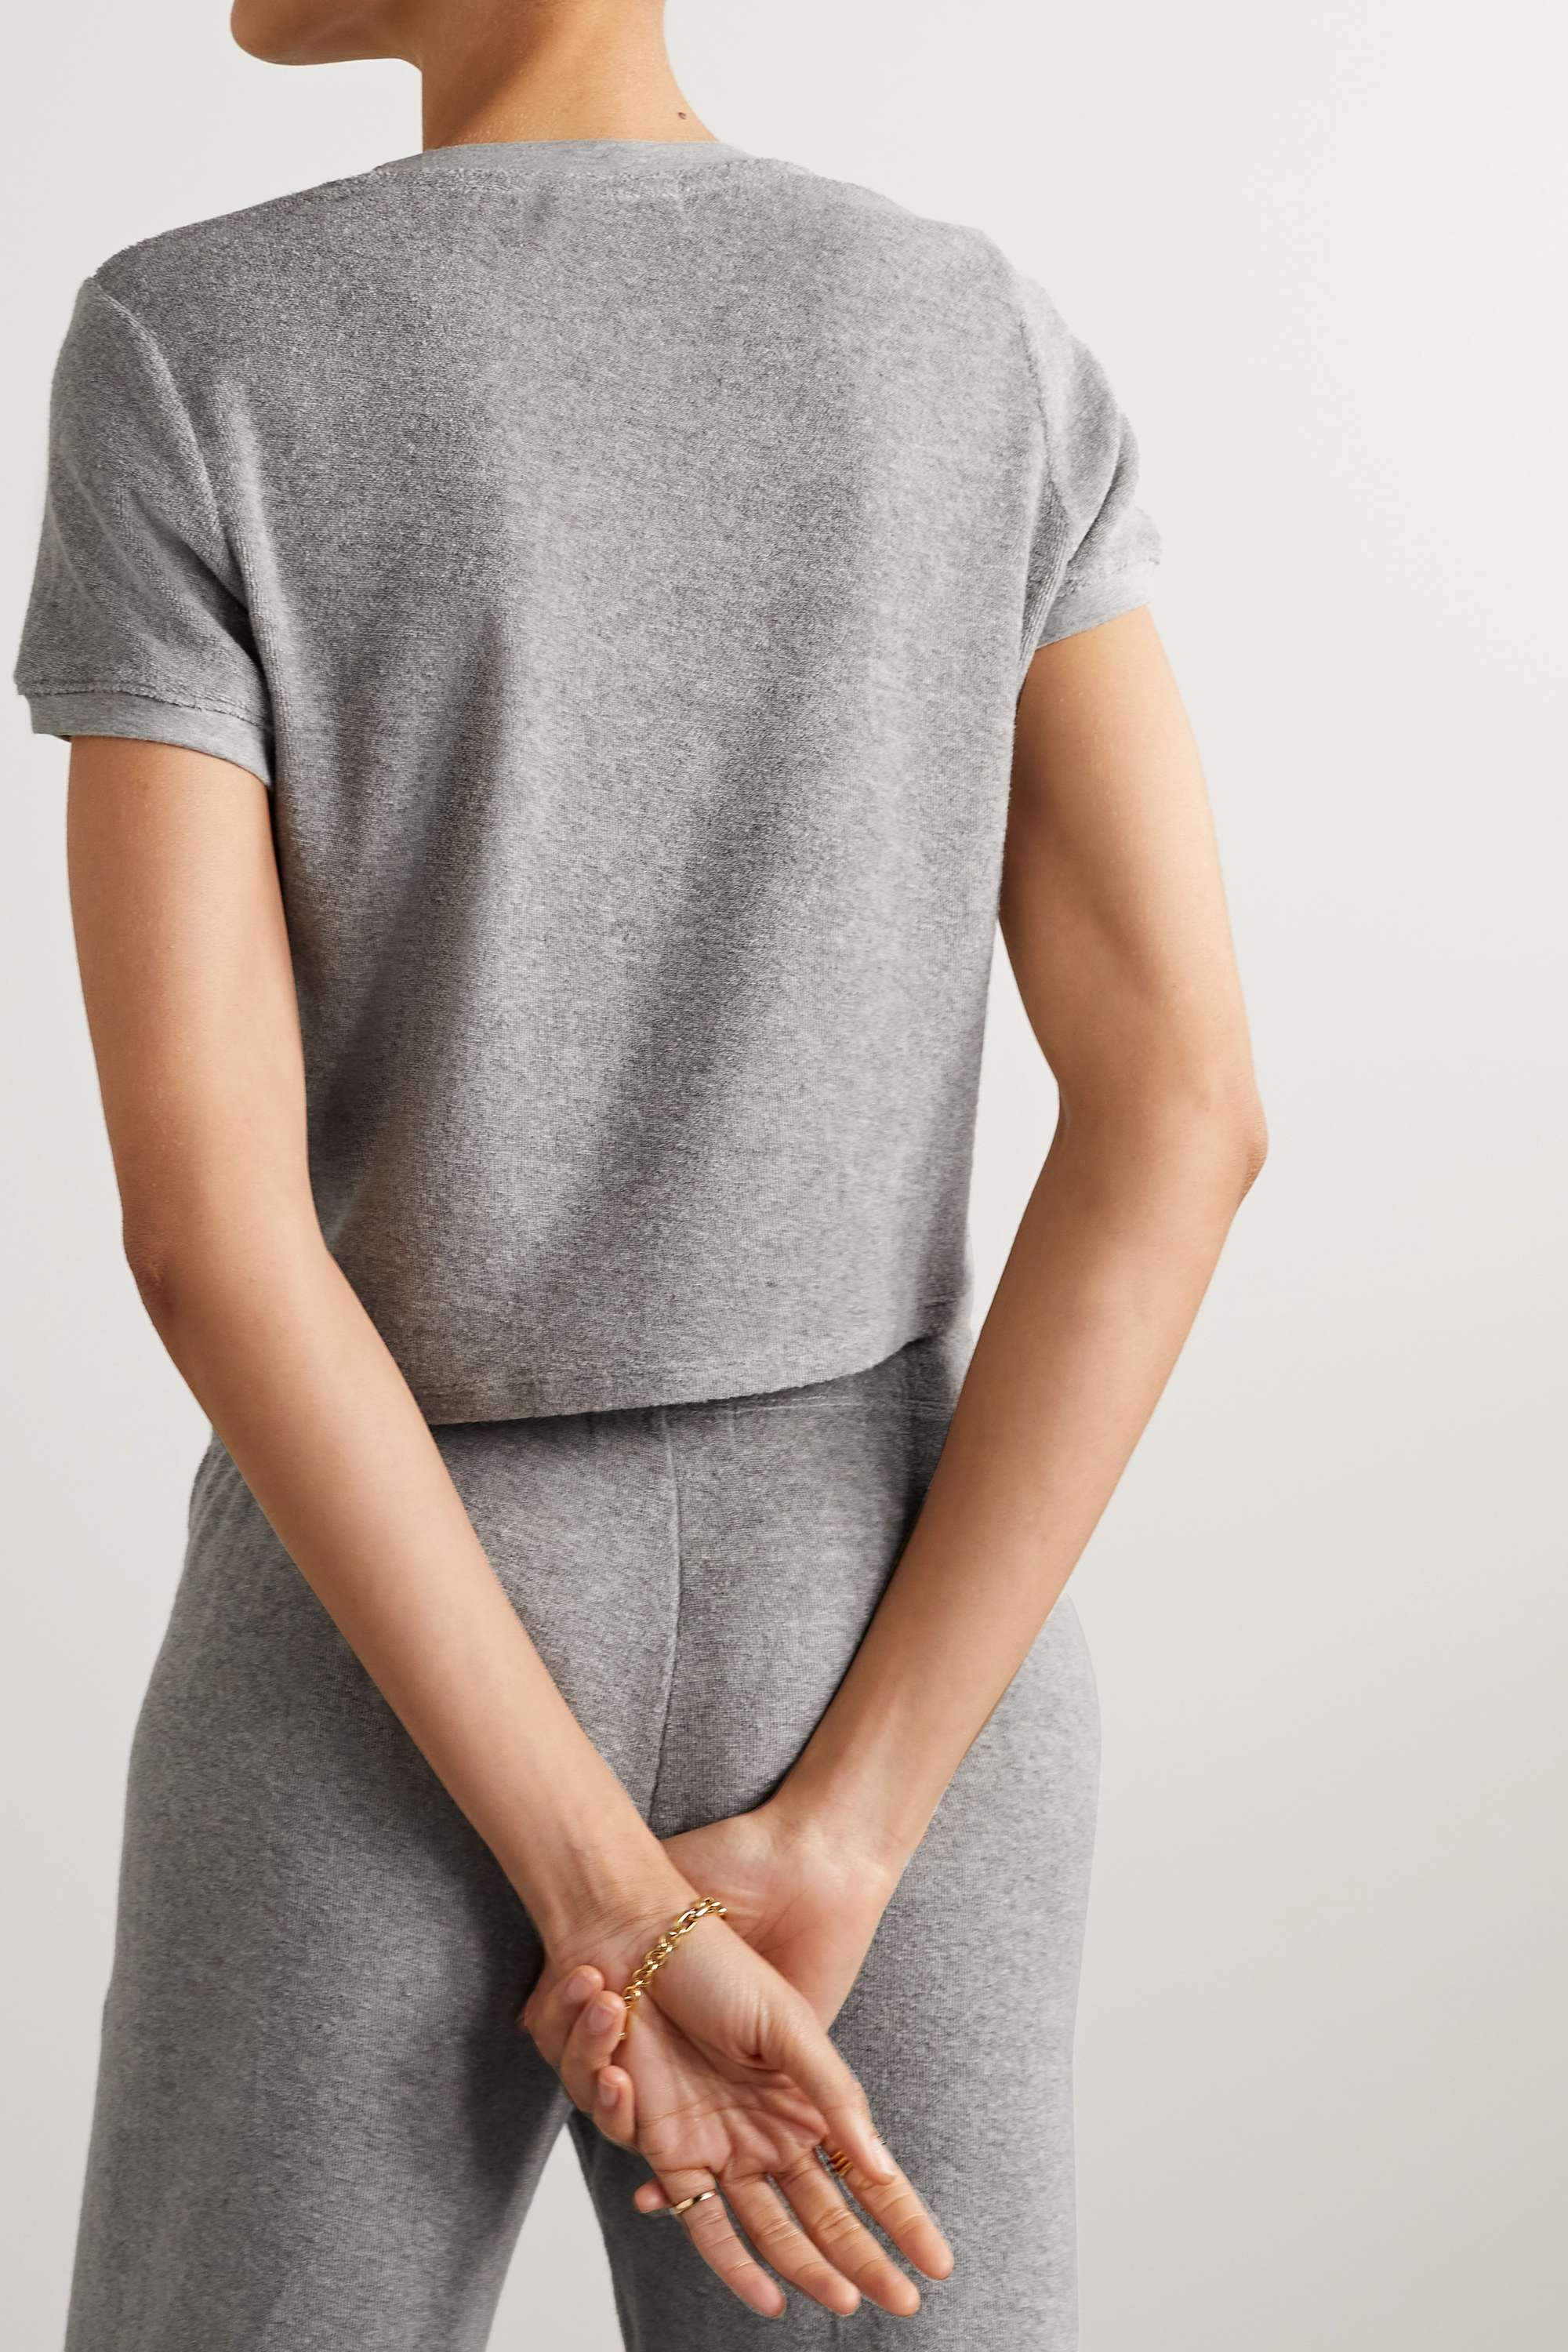 прописи наклейки шлеп шлеп точность движений SUZIE KONDI Капри футболка из хлопковой махровой ткани, серый